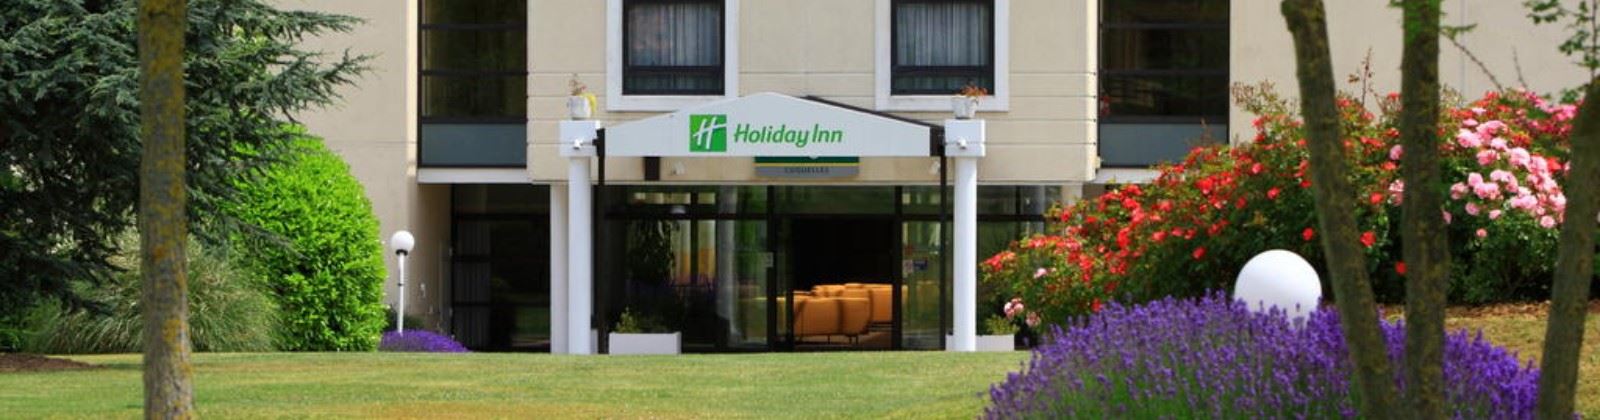 holiday inn calais coquelles olevene hotel restaurant seminaires booking 